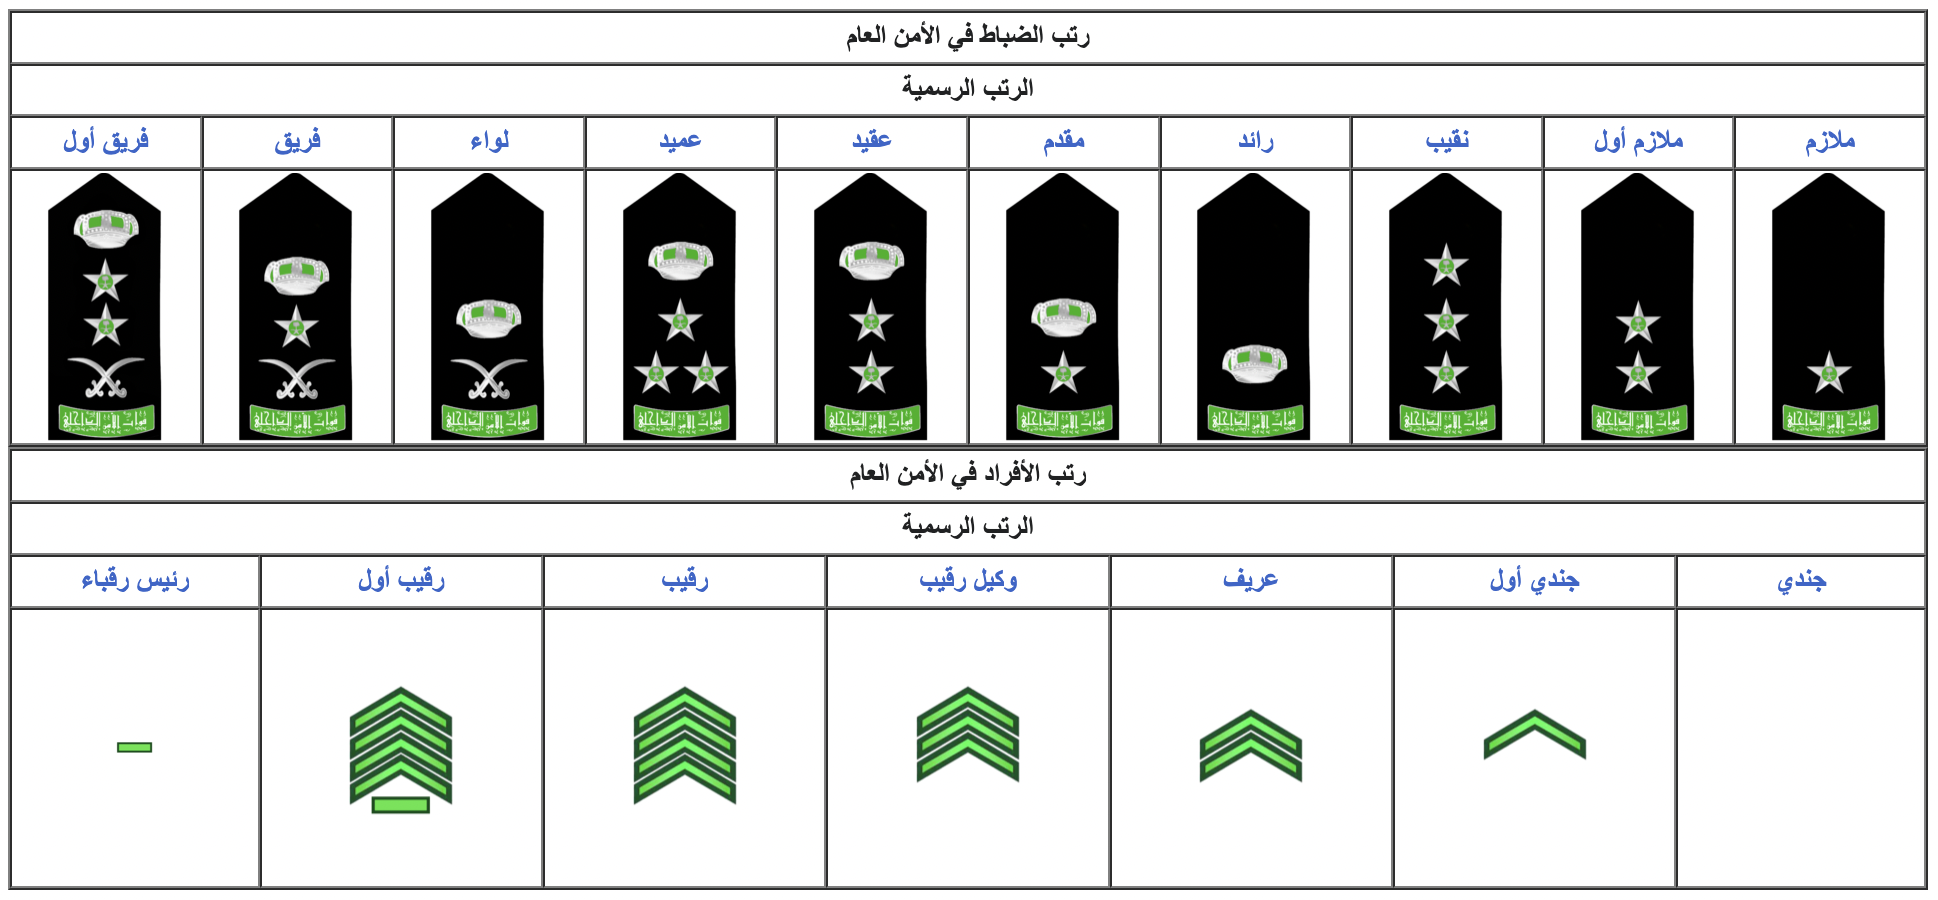 الرتب العسكرية السعودية الترتيب والمدة والراتب